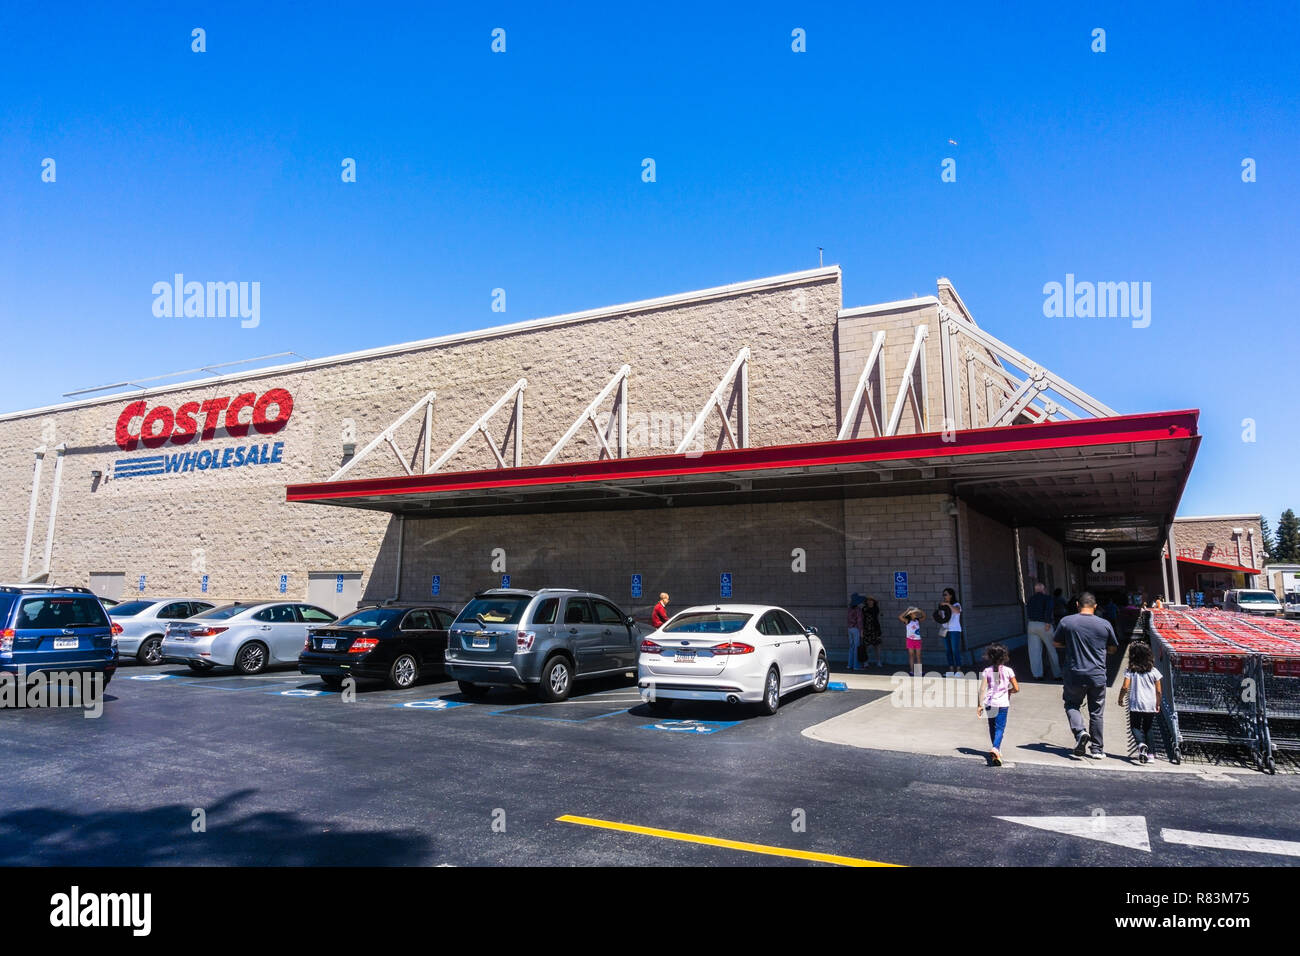 August 6, 2018 Mountain View/CA/USA - Außenansicht eines der Costco Wholesale Stores in San Francisco Bay Area; Menschen zu Fuß Stockfoto